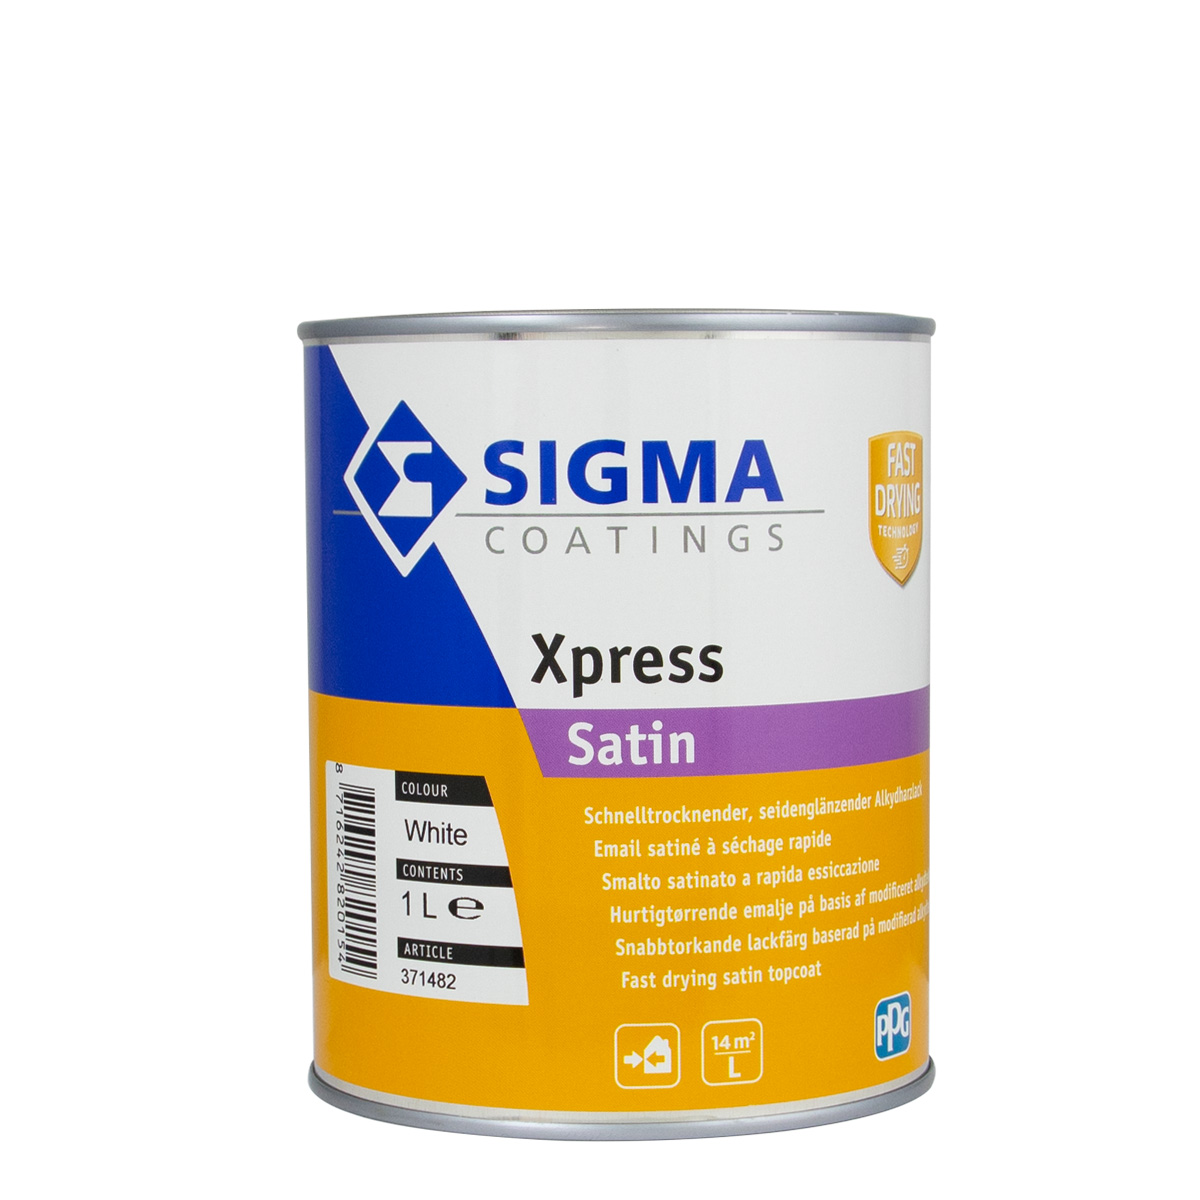 Sigma_Xpress_Satin_1l_gross